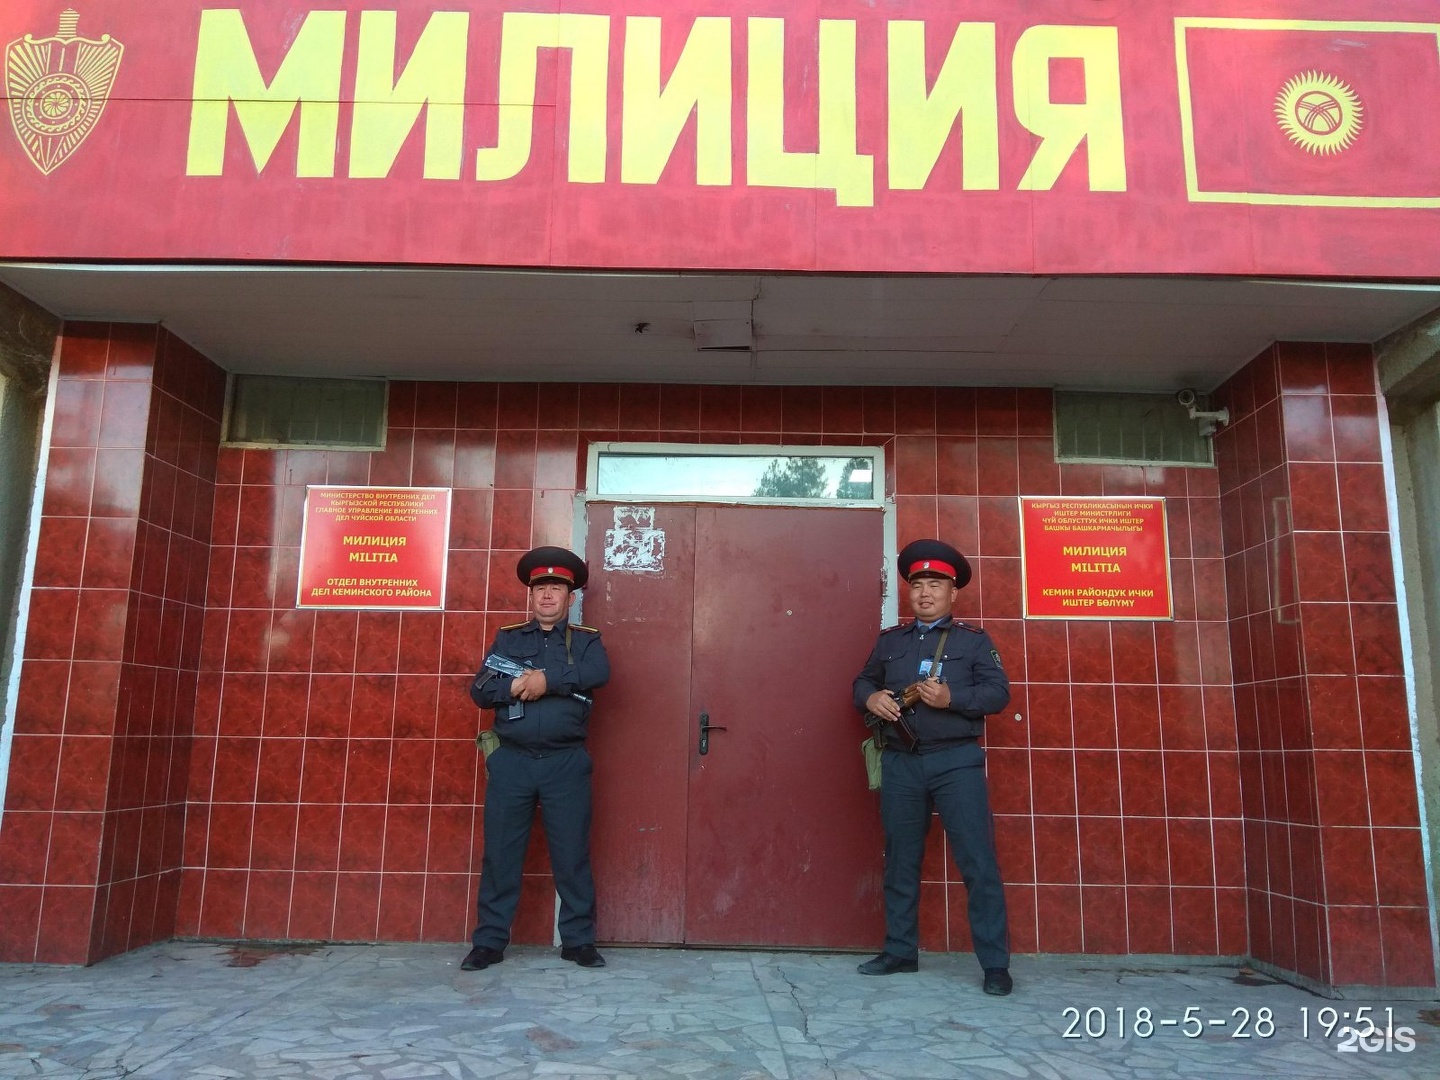 Как позвонить в киргизию. Милиция вывеска. Полиция Киргизии табличка. Милиция Кыргызстана вывеска. Отделы в милиции в Кыргызстане.